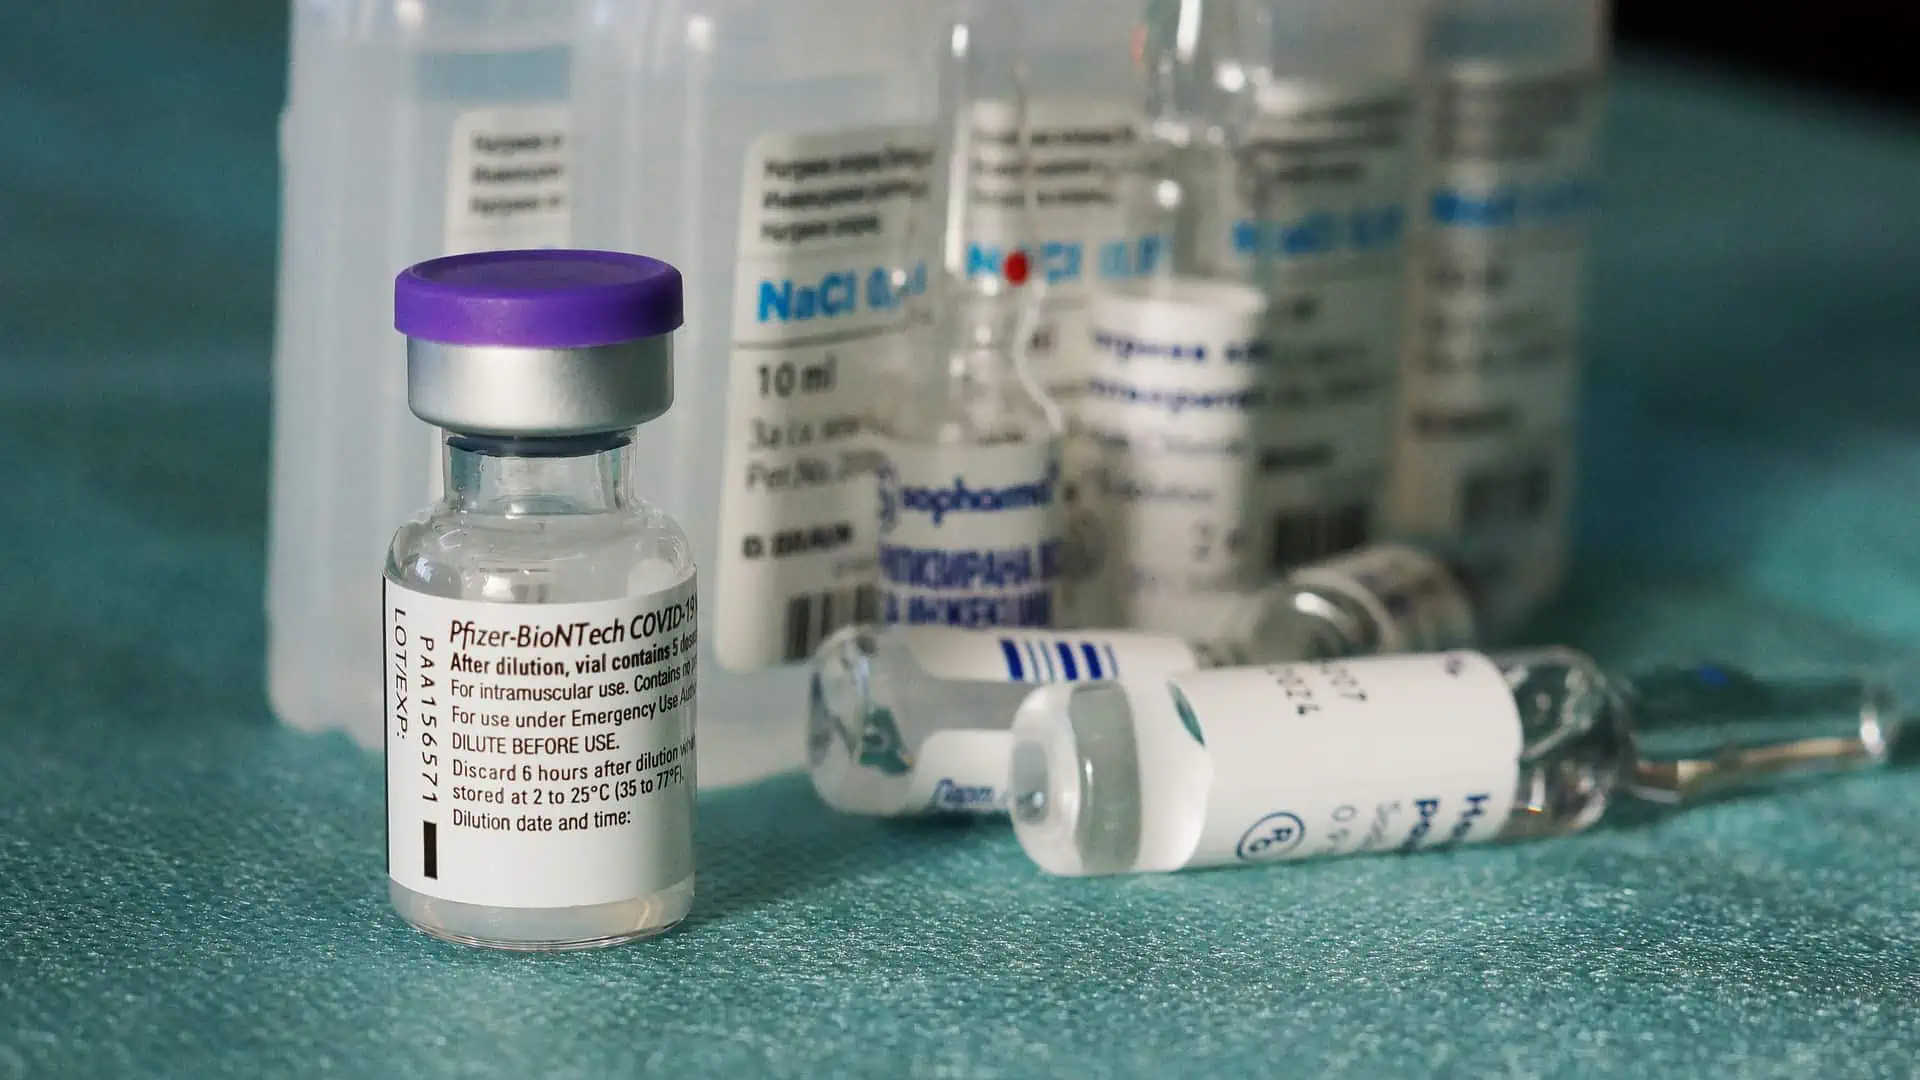 Seconda dose vaccino: quanto si può aspettare? Giorni previsti per il richiamo